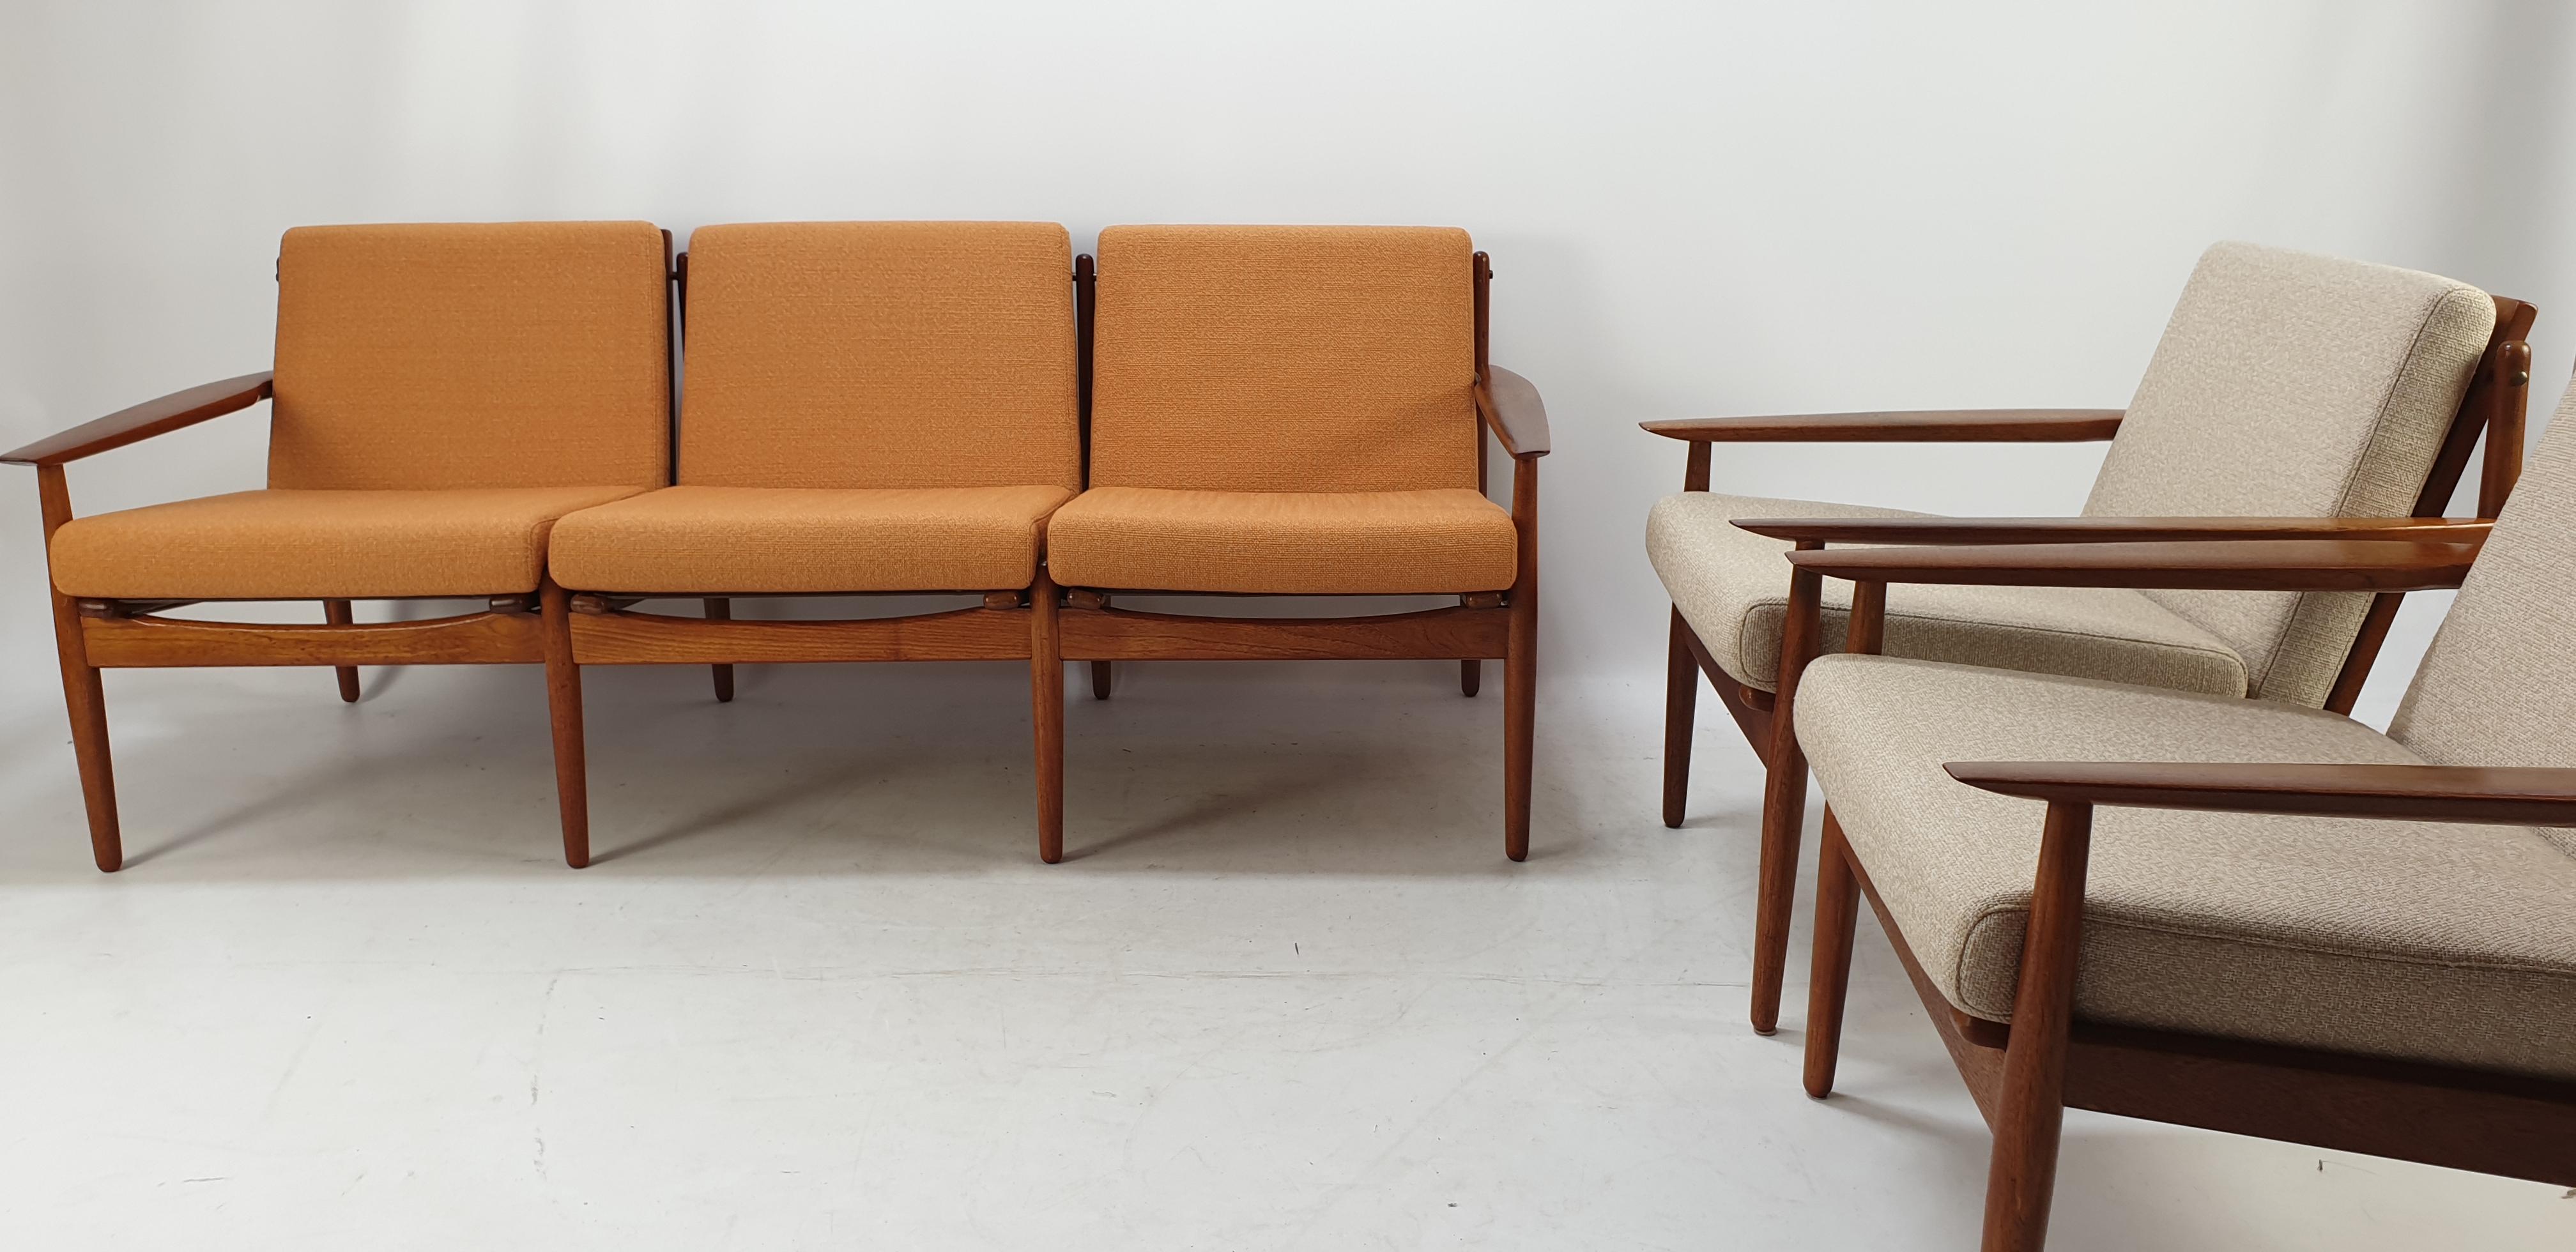 Diese elegante Wohnzimmergarnitur wurde von Svend Åge Eriksen entworfen und in den 1960er Jahren von der Glostrup Møbelfabrik in Dänemark hergestellt. Das schöne Set besteht aus einem 3-sitzigen Sofa und zwei Sesseln. Die Stücke haben Rahmen aus